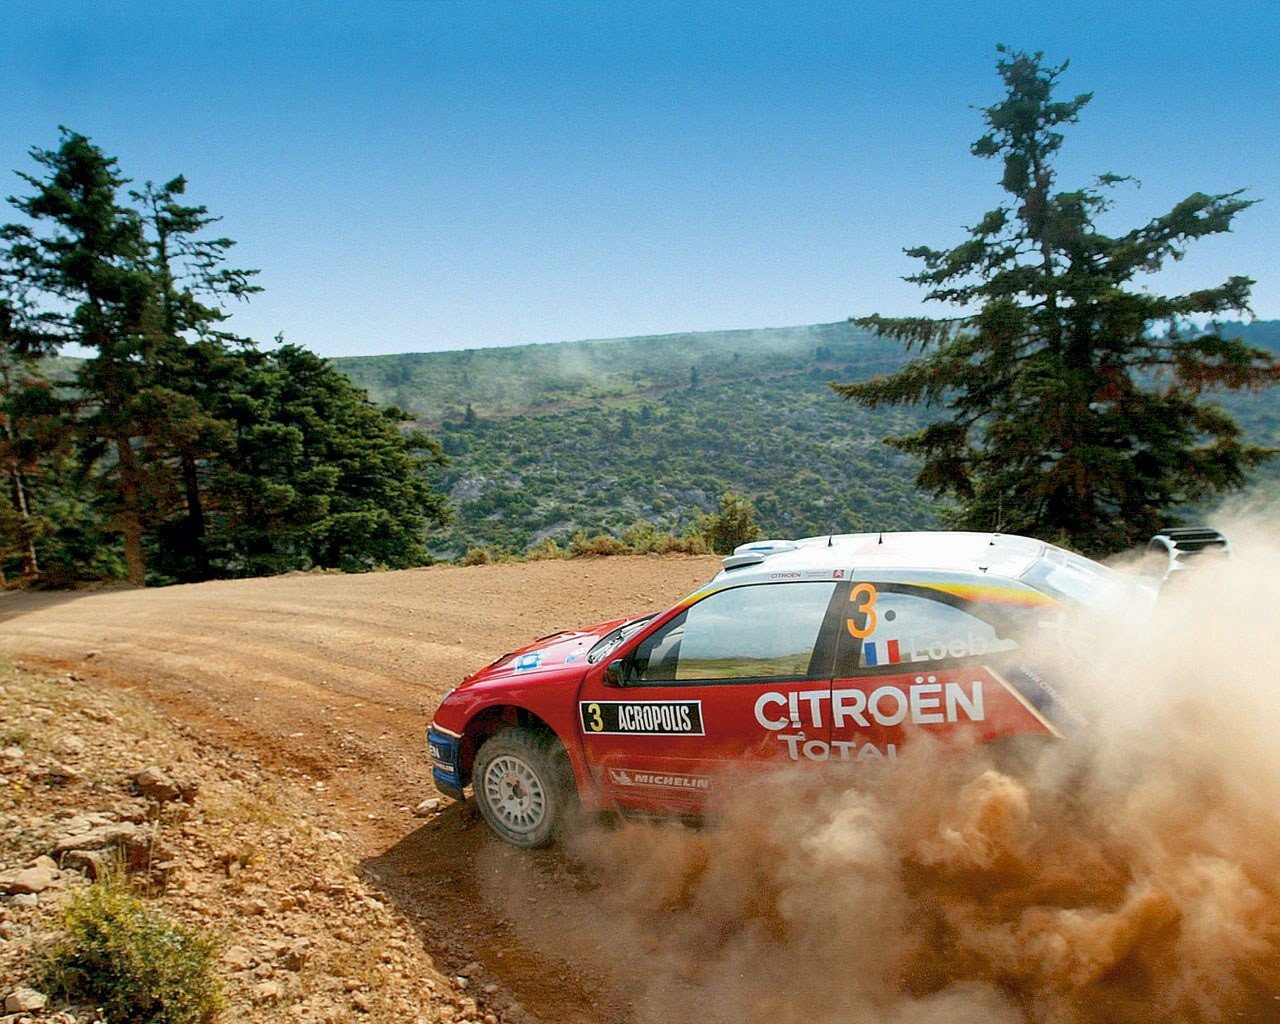 Топ ралли. Citroen Rally. Топ Гир ралли кар. Citroën Rally 80s. Ралли обои.